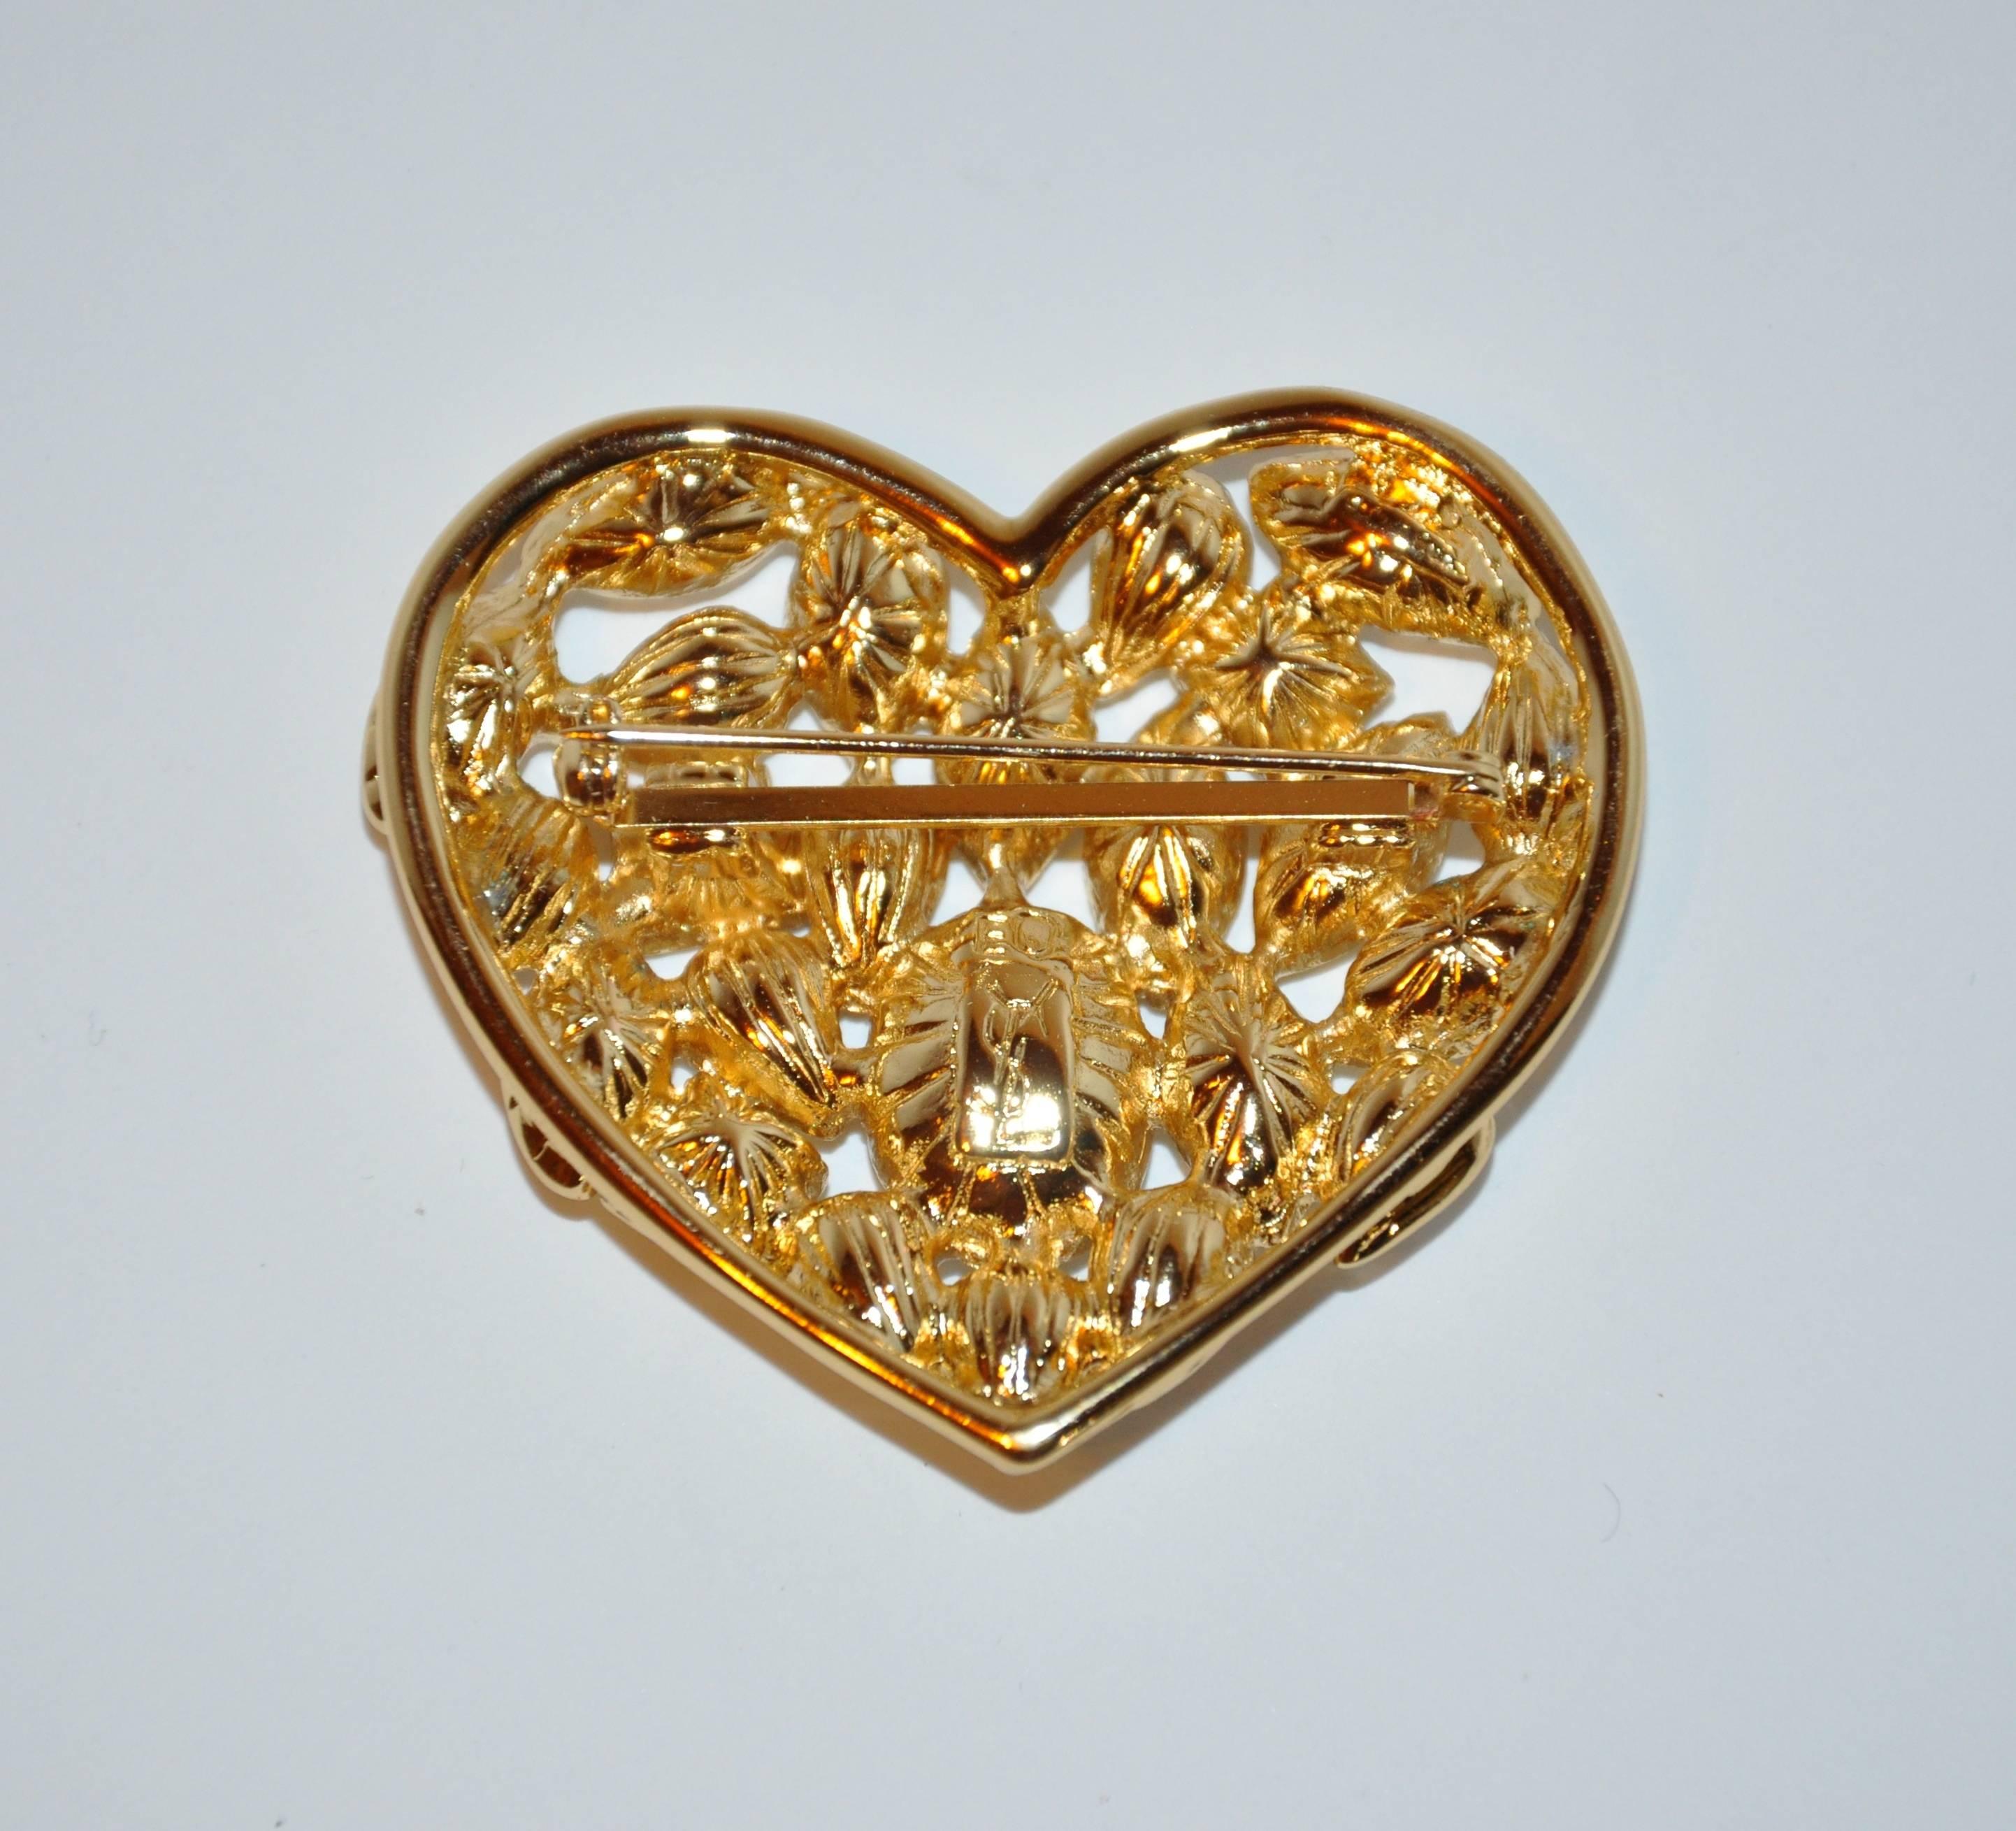 Yves Saint Laurent merveilleusement élégant mais fantaisiste "Hearts to Hearts" ; énorme broche multi-rhinestone sertie dans un matériel en or doré mesure 2" ; en largeur ainsi qu'en longueur. Fabriqué en France:: avec boîte d'origine.